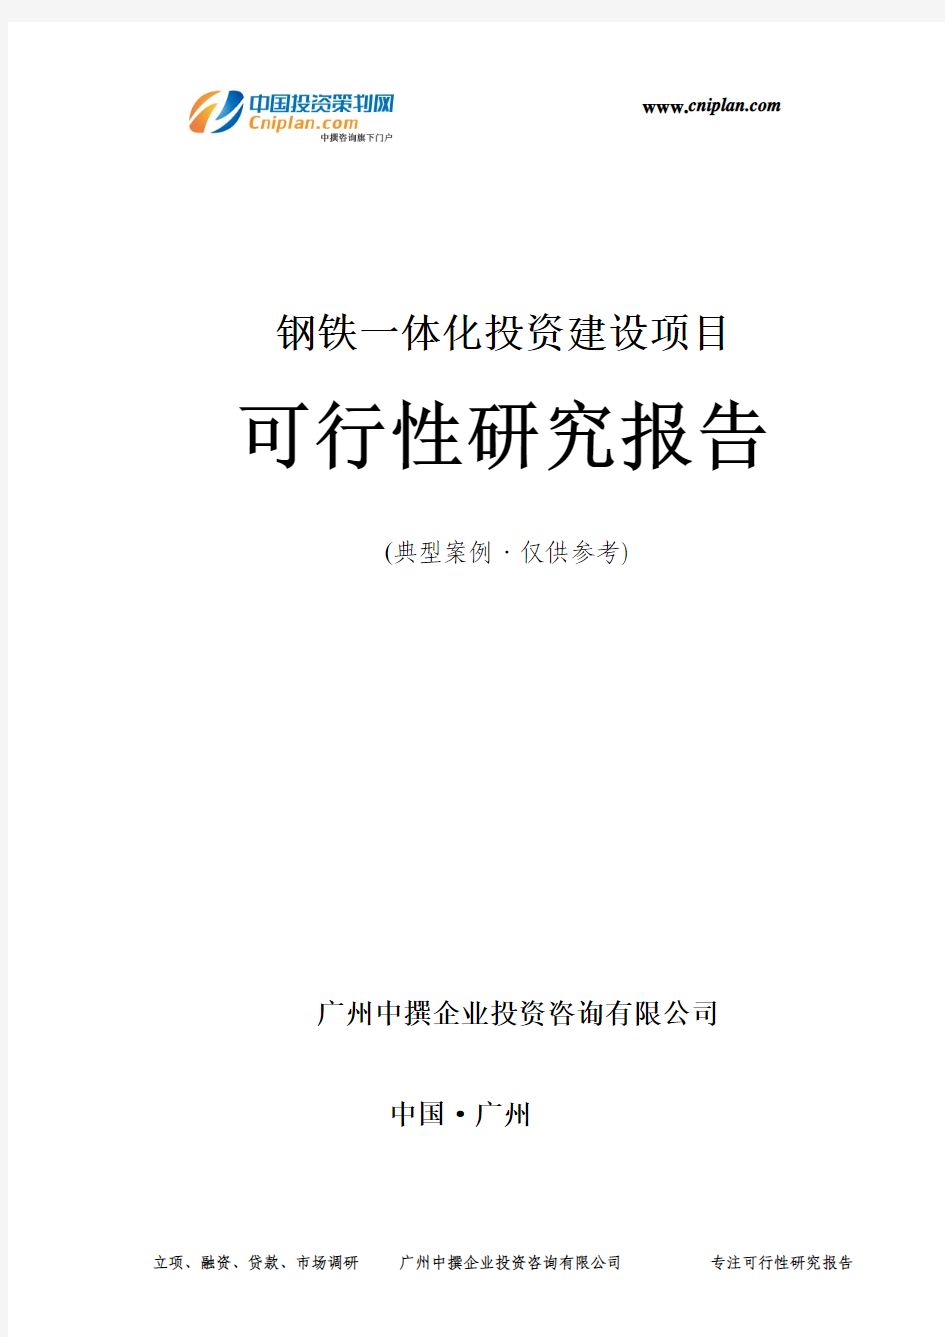 钢铁一体化投资建设项目可行性研究报告-广州中撰咨询